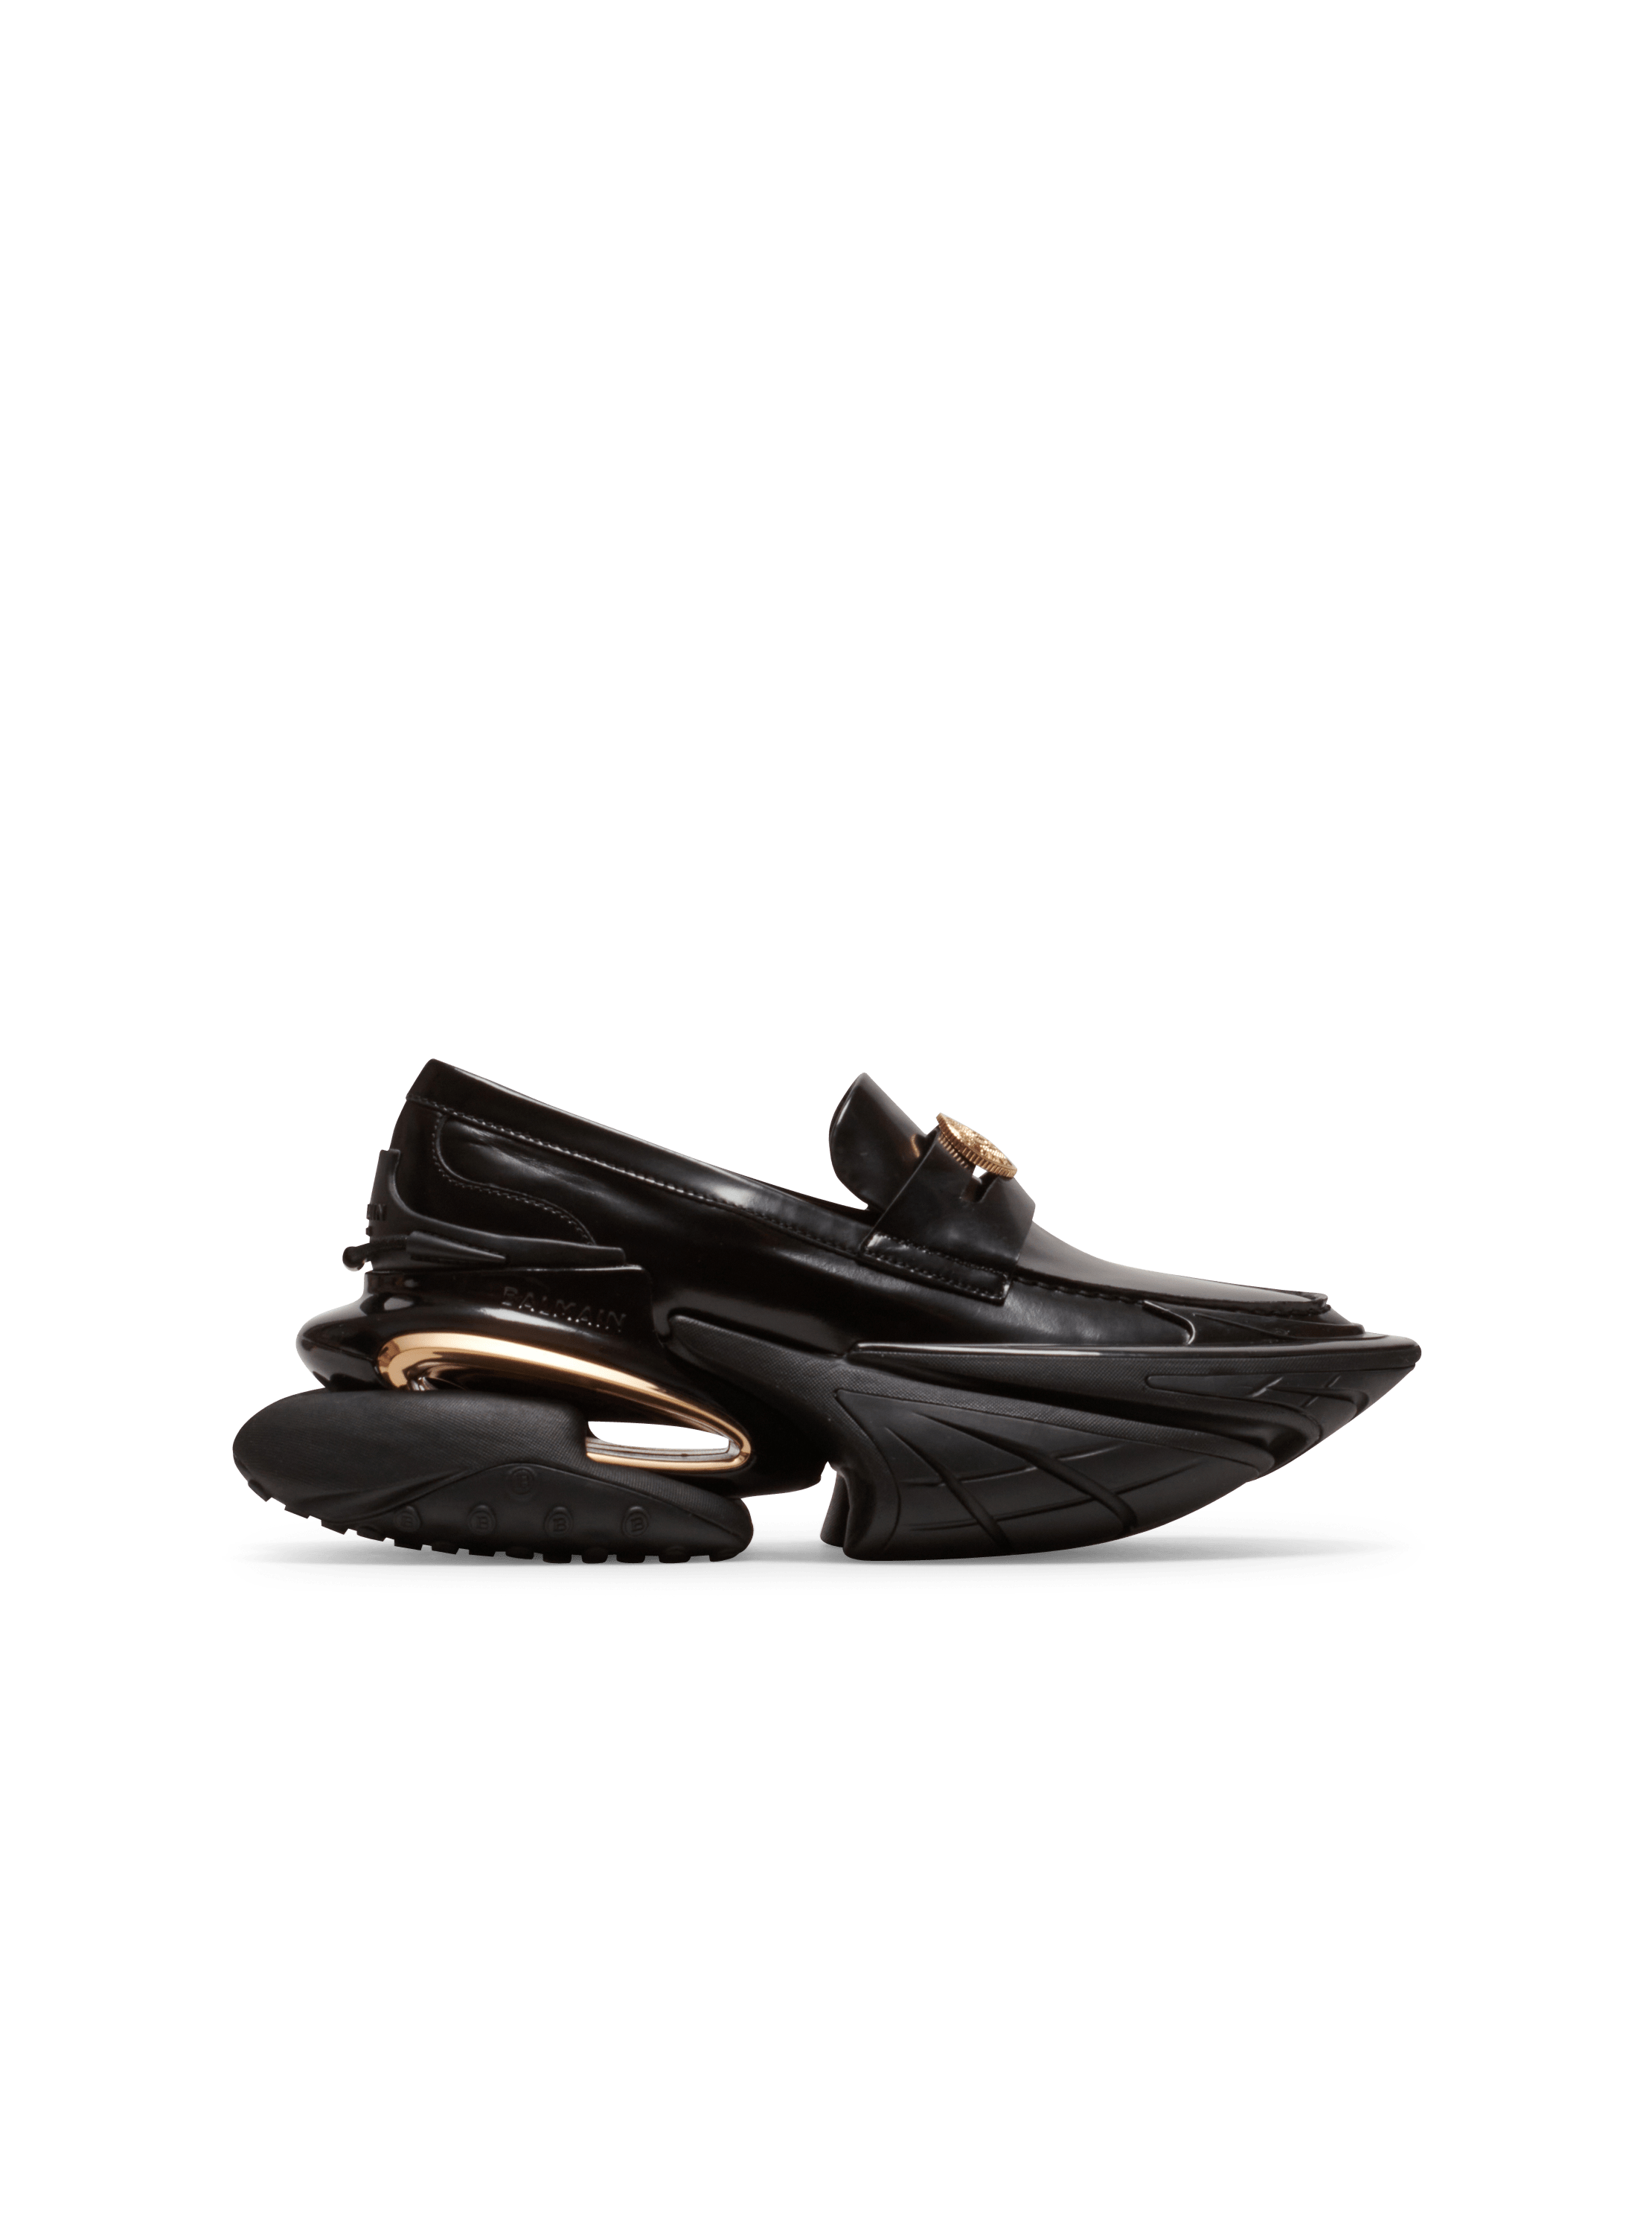 Mokassin-Sneakers Unicorn aus Leder